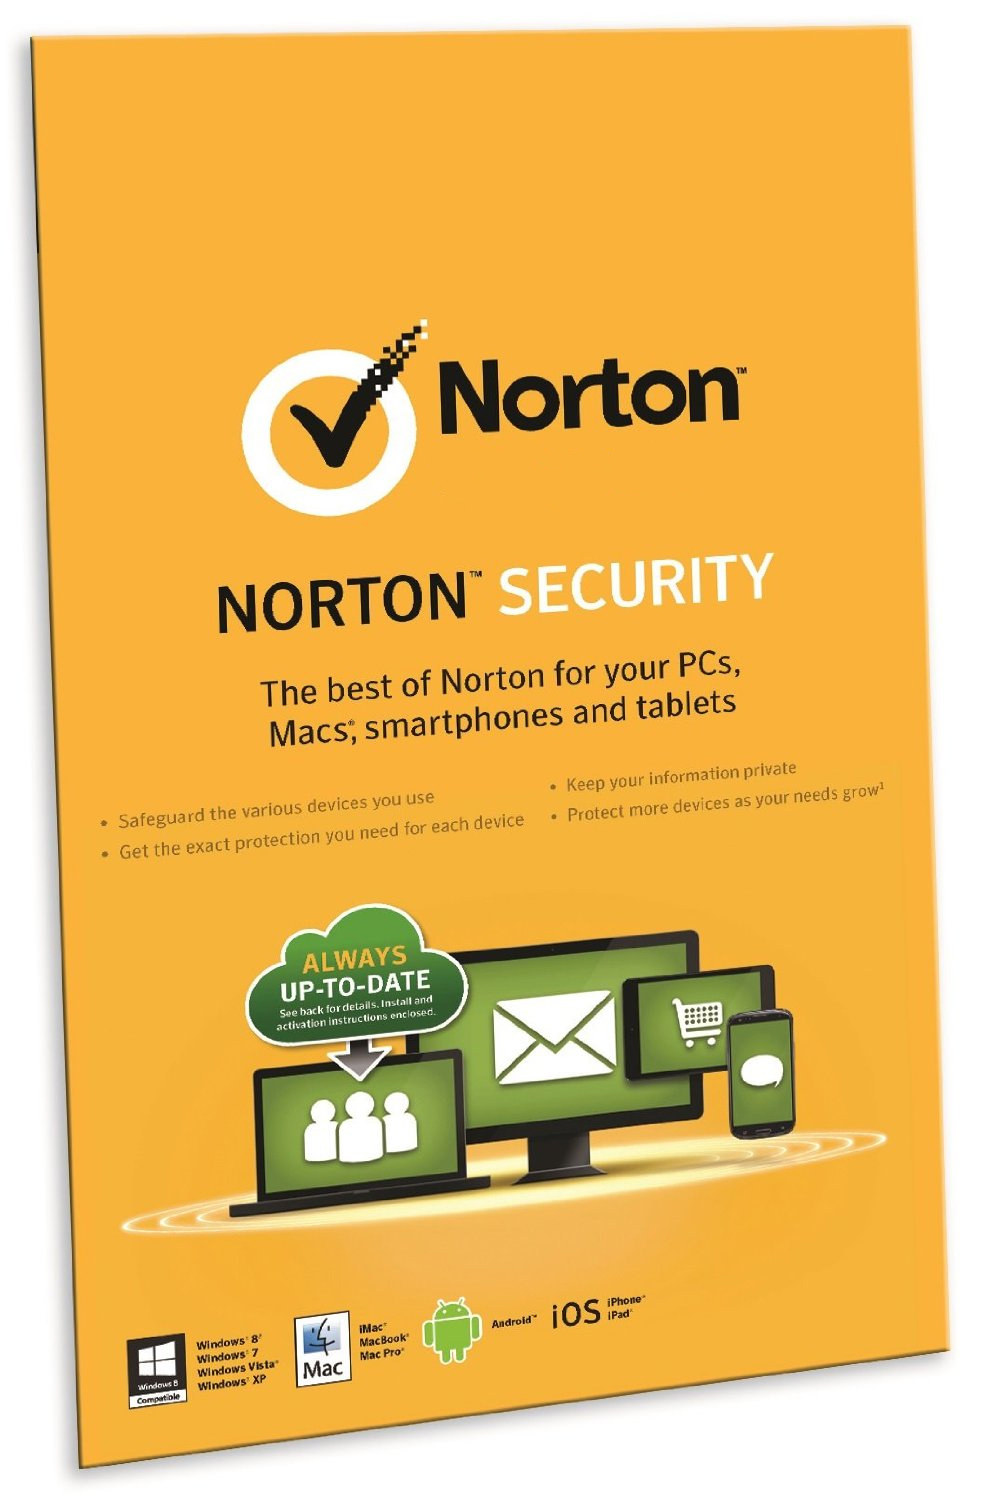 Symantec Norton Security 2.0